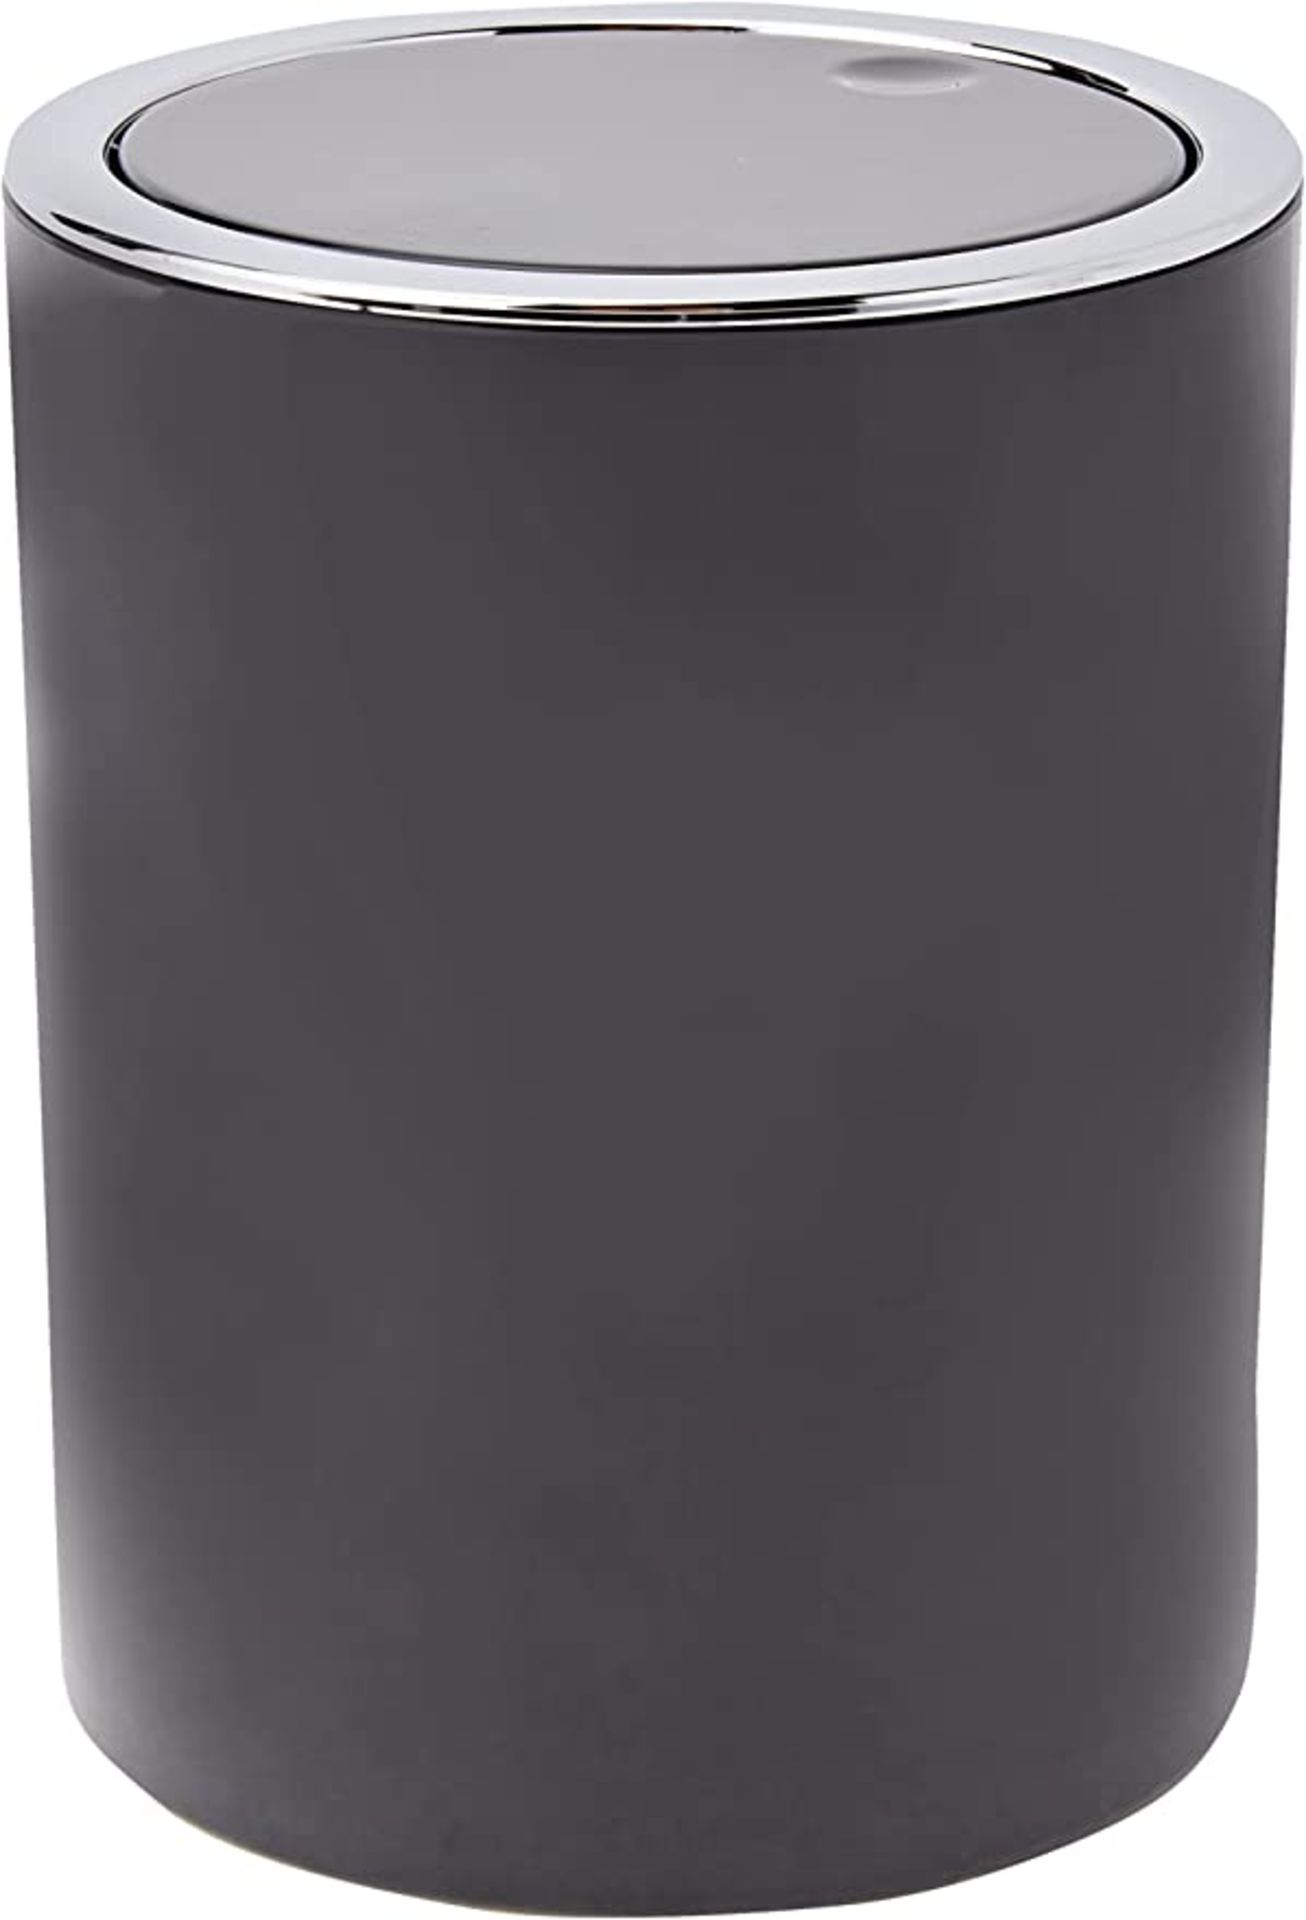 RRP - £13.31 Kleine Wolke Cosmetic Bin ABS Black 1.5 L Bucket